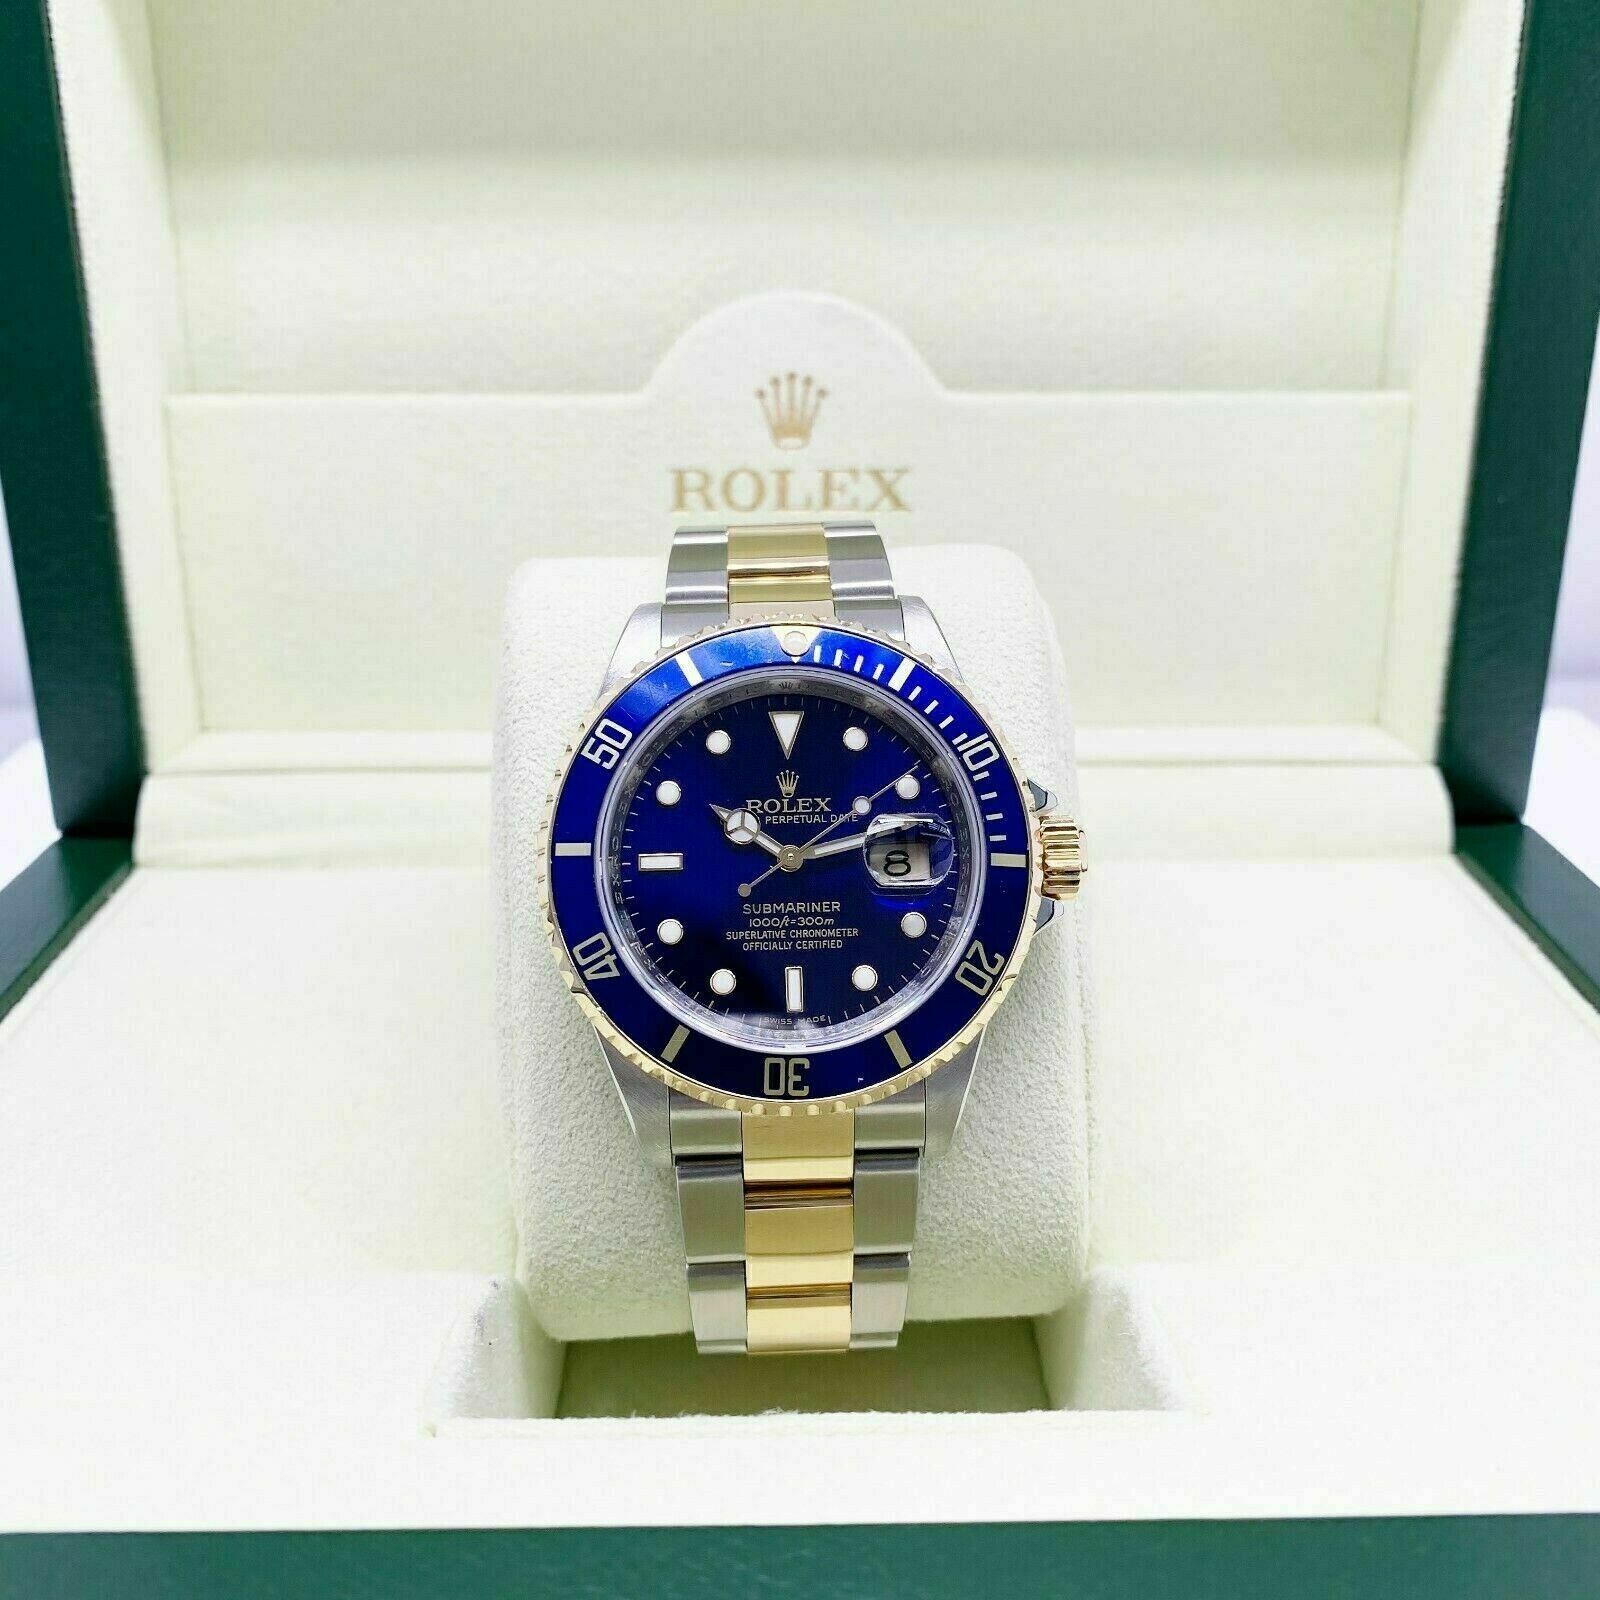 Rolex Blue Submariner Date 18K Yellow Gold & Steel Watch Ref 16613 M Serial